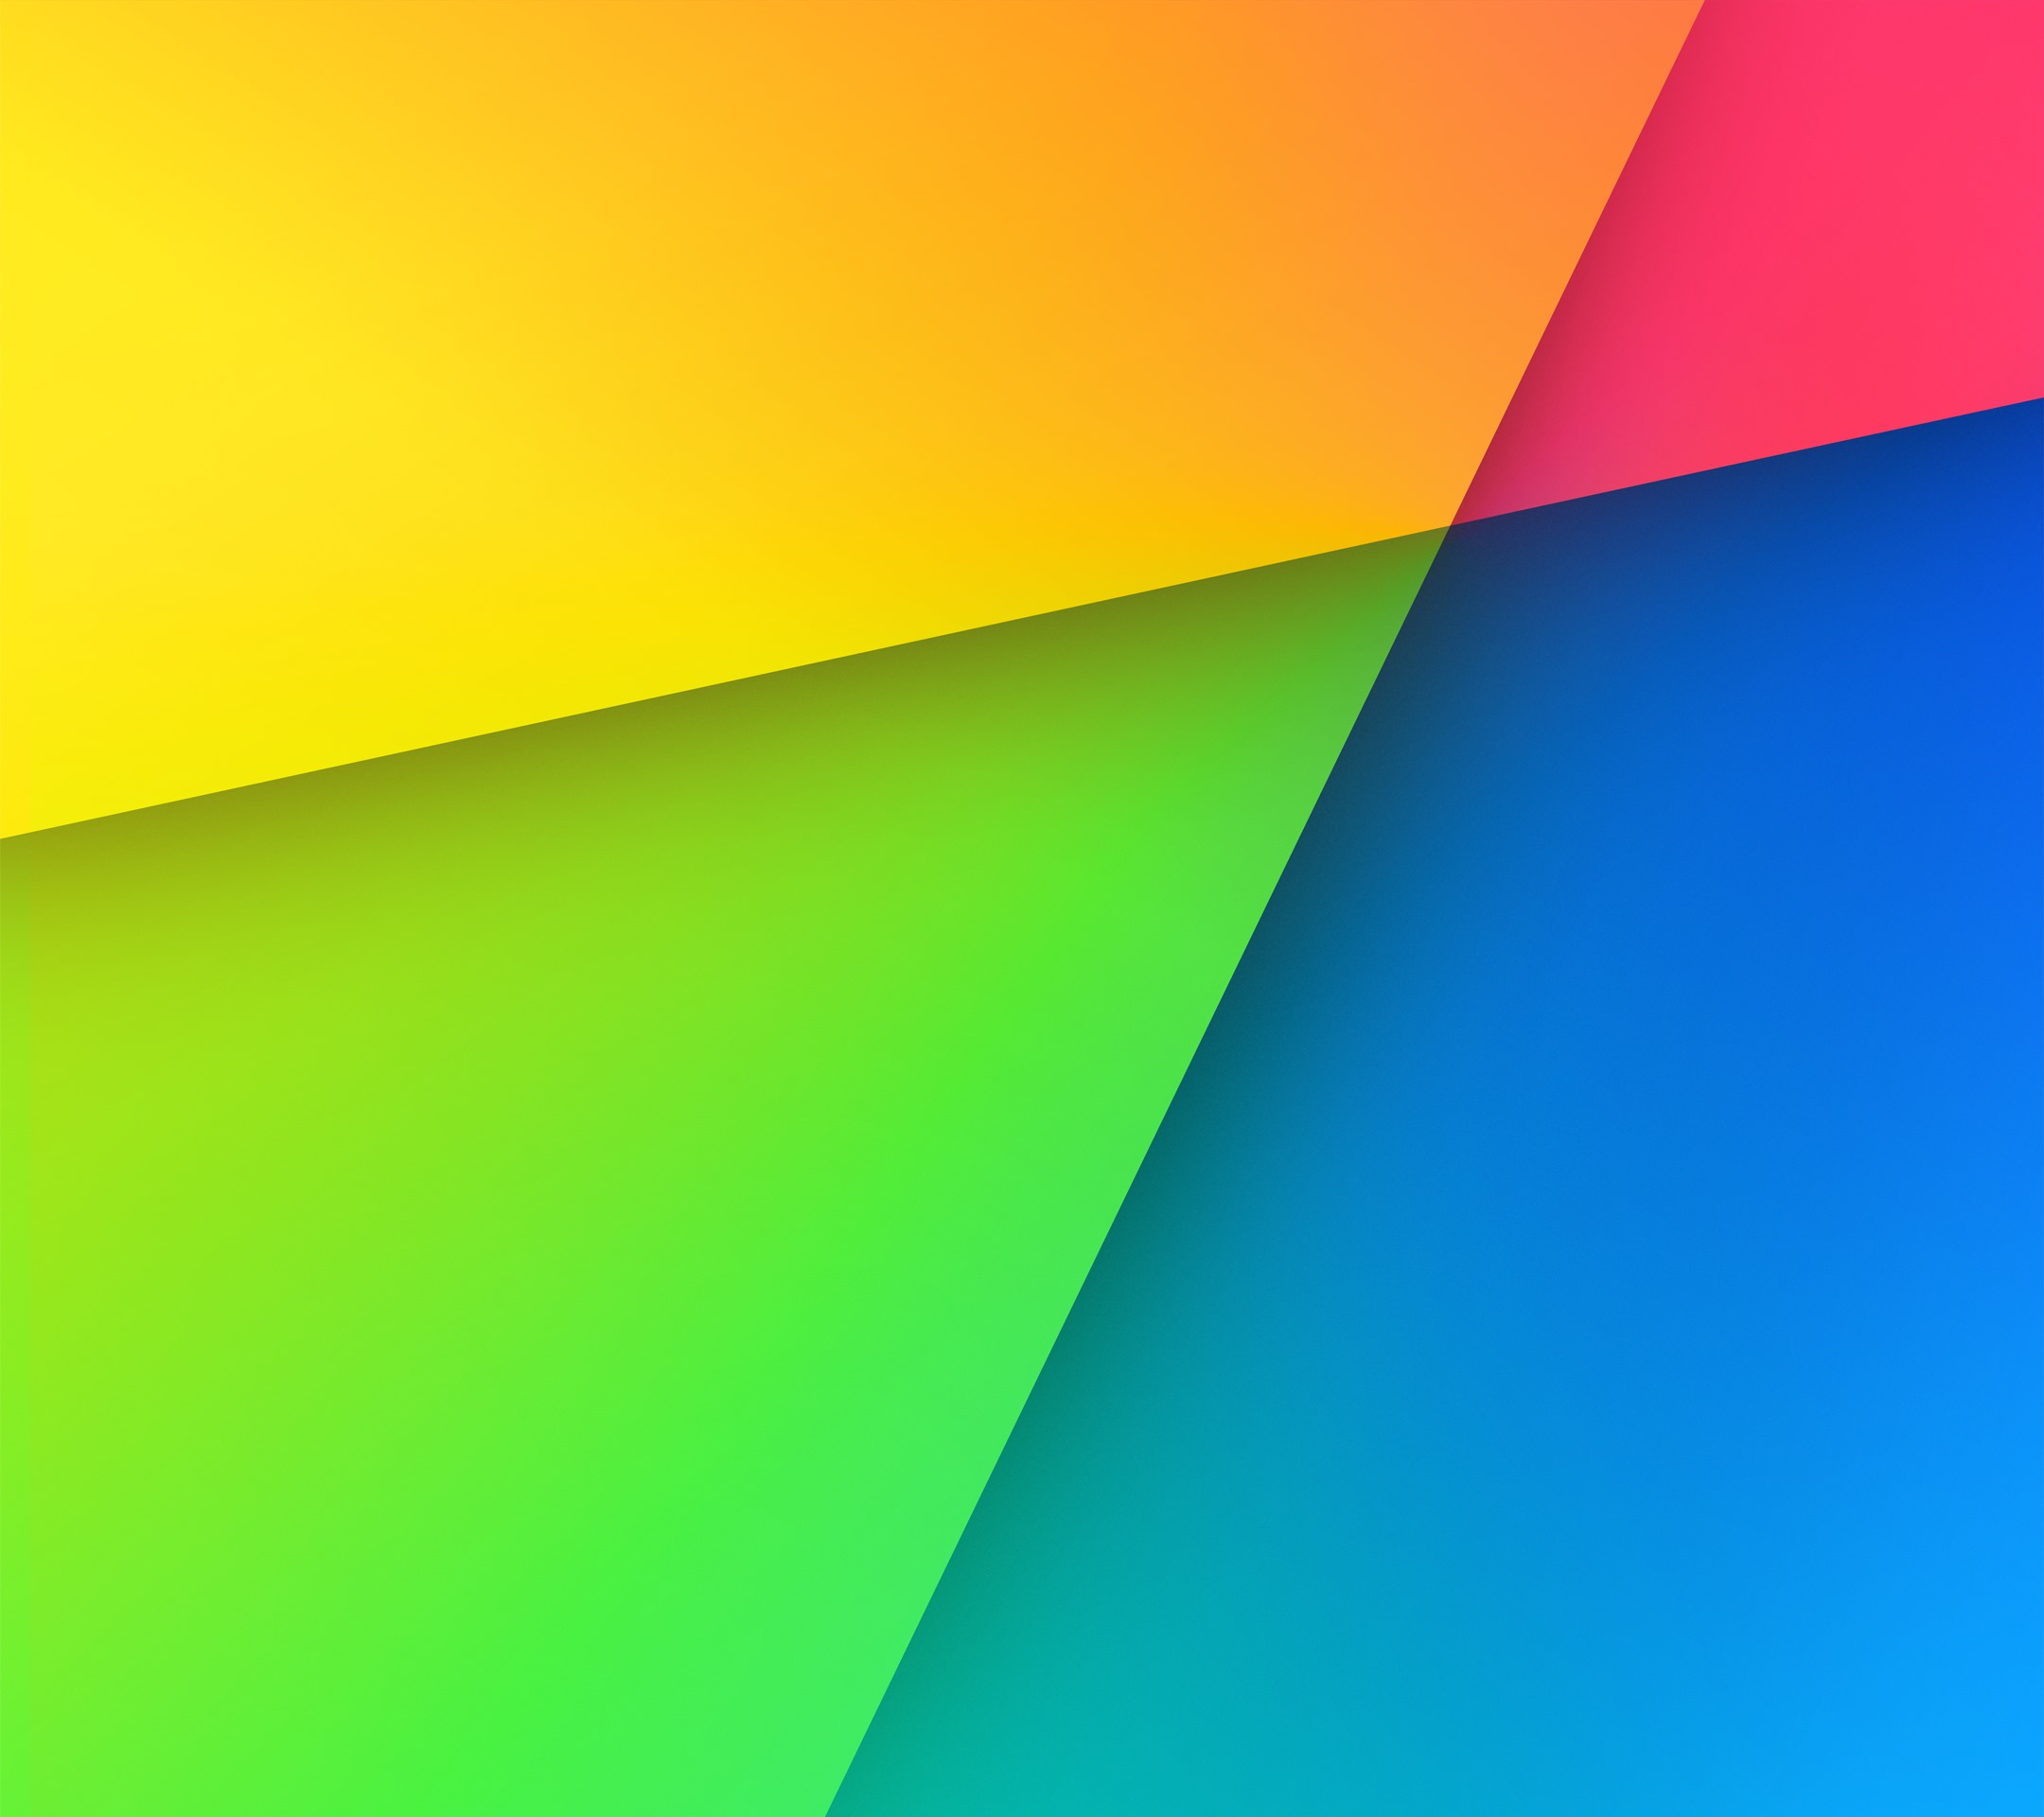 nexus 5x fondo de pantalla hd,verde,azul,naranja,amarillo,colorido